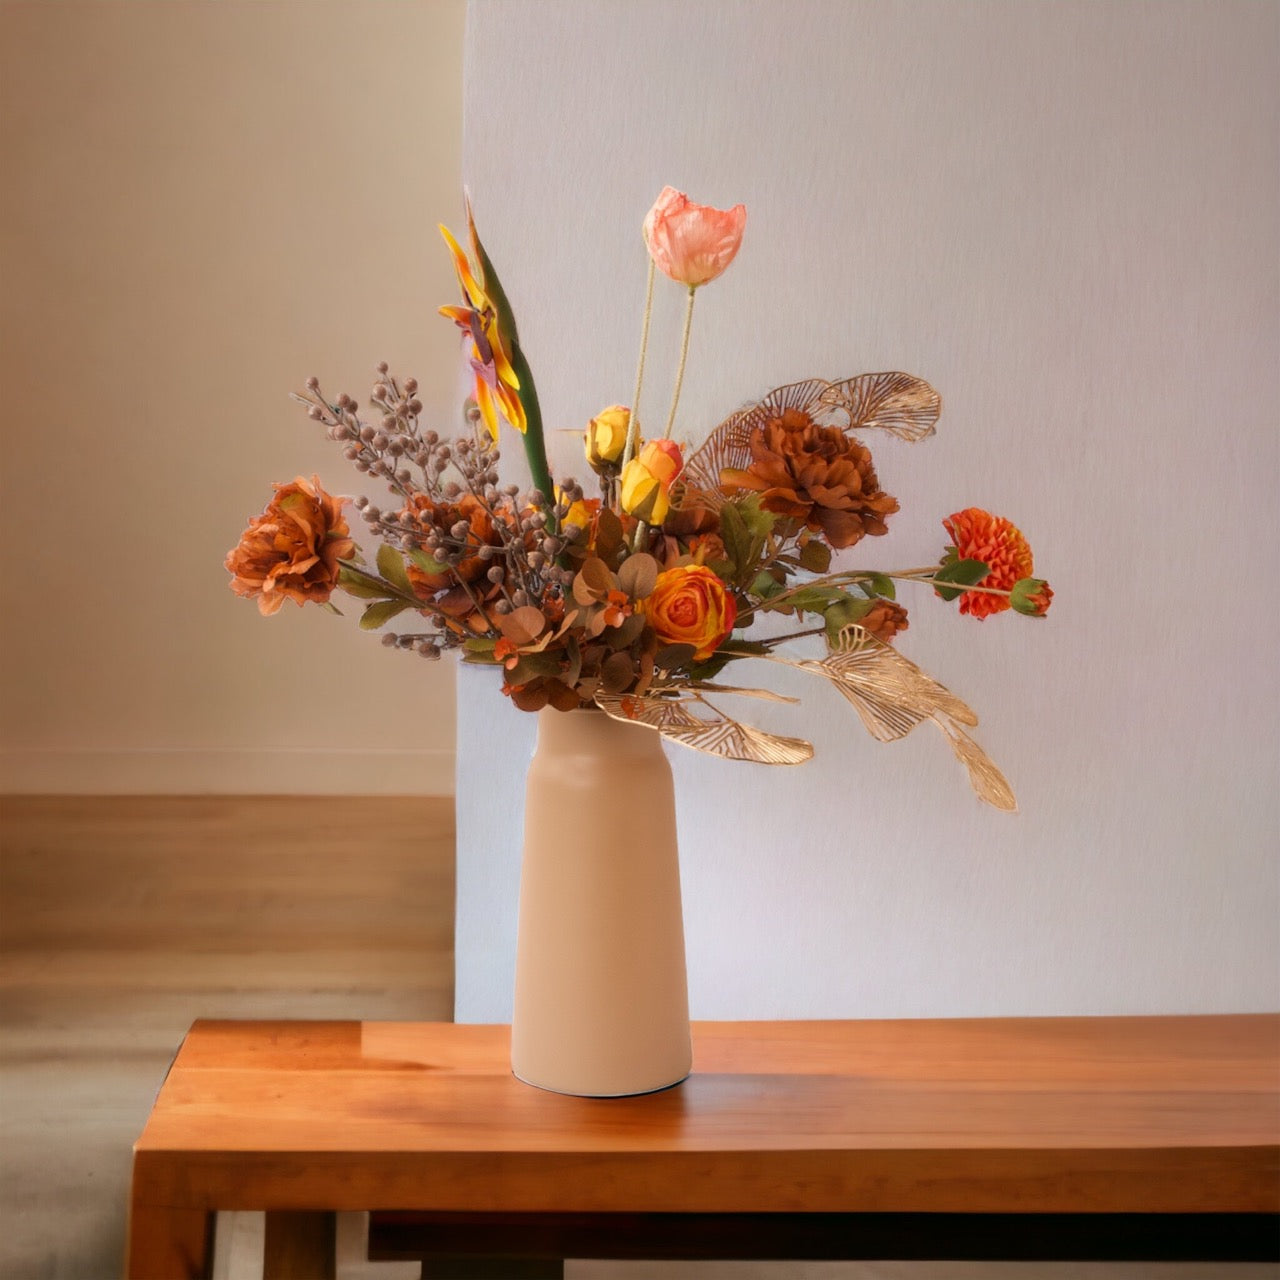 Gebonden VeldBoeket kunstbloemen in Herfstkleuren compleet met vaas op een houten tafel voor een muur